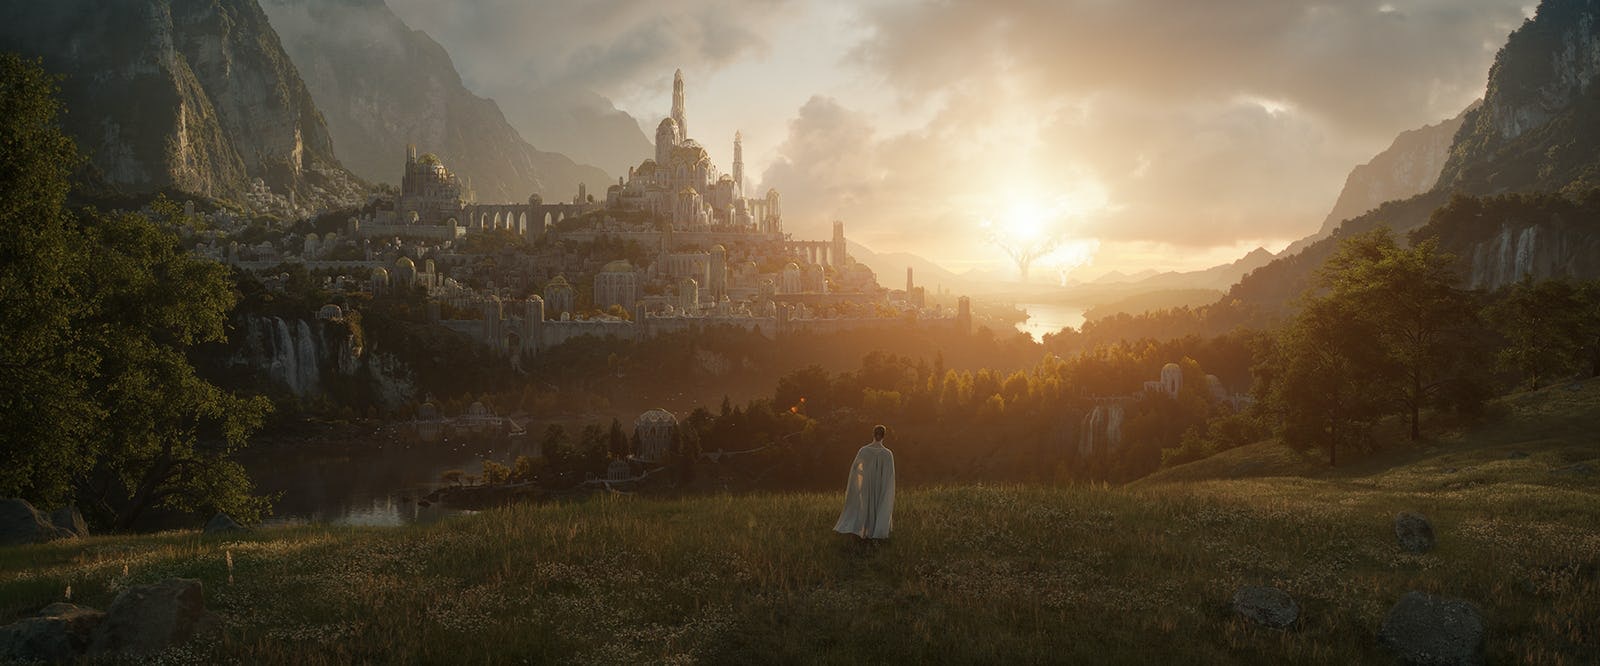 Όλα όσα πρέπει να γνωρίζετε για το Lord Of The Rings: The Rings of Power Series του Amazon Prime